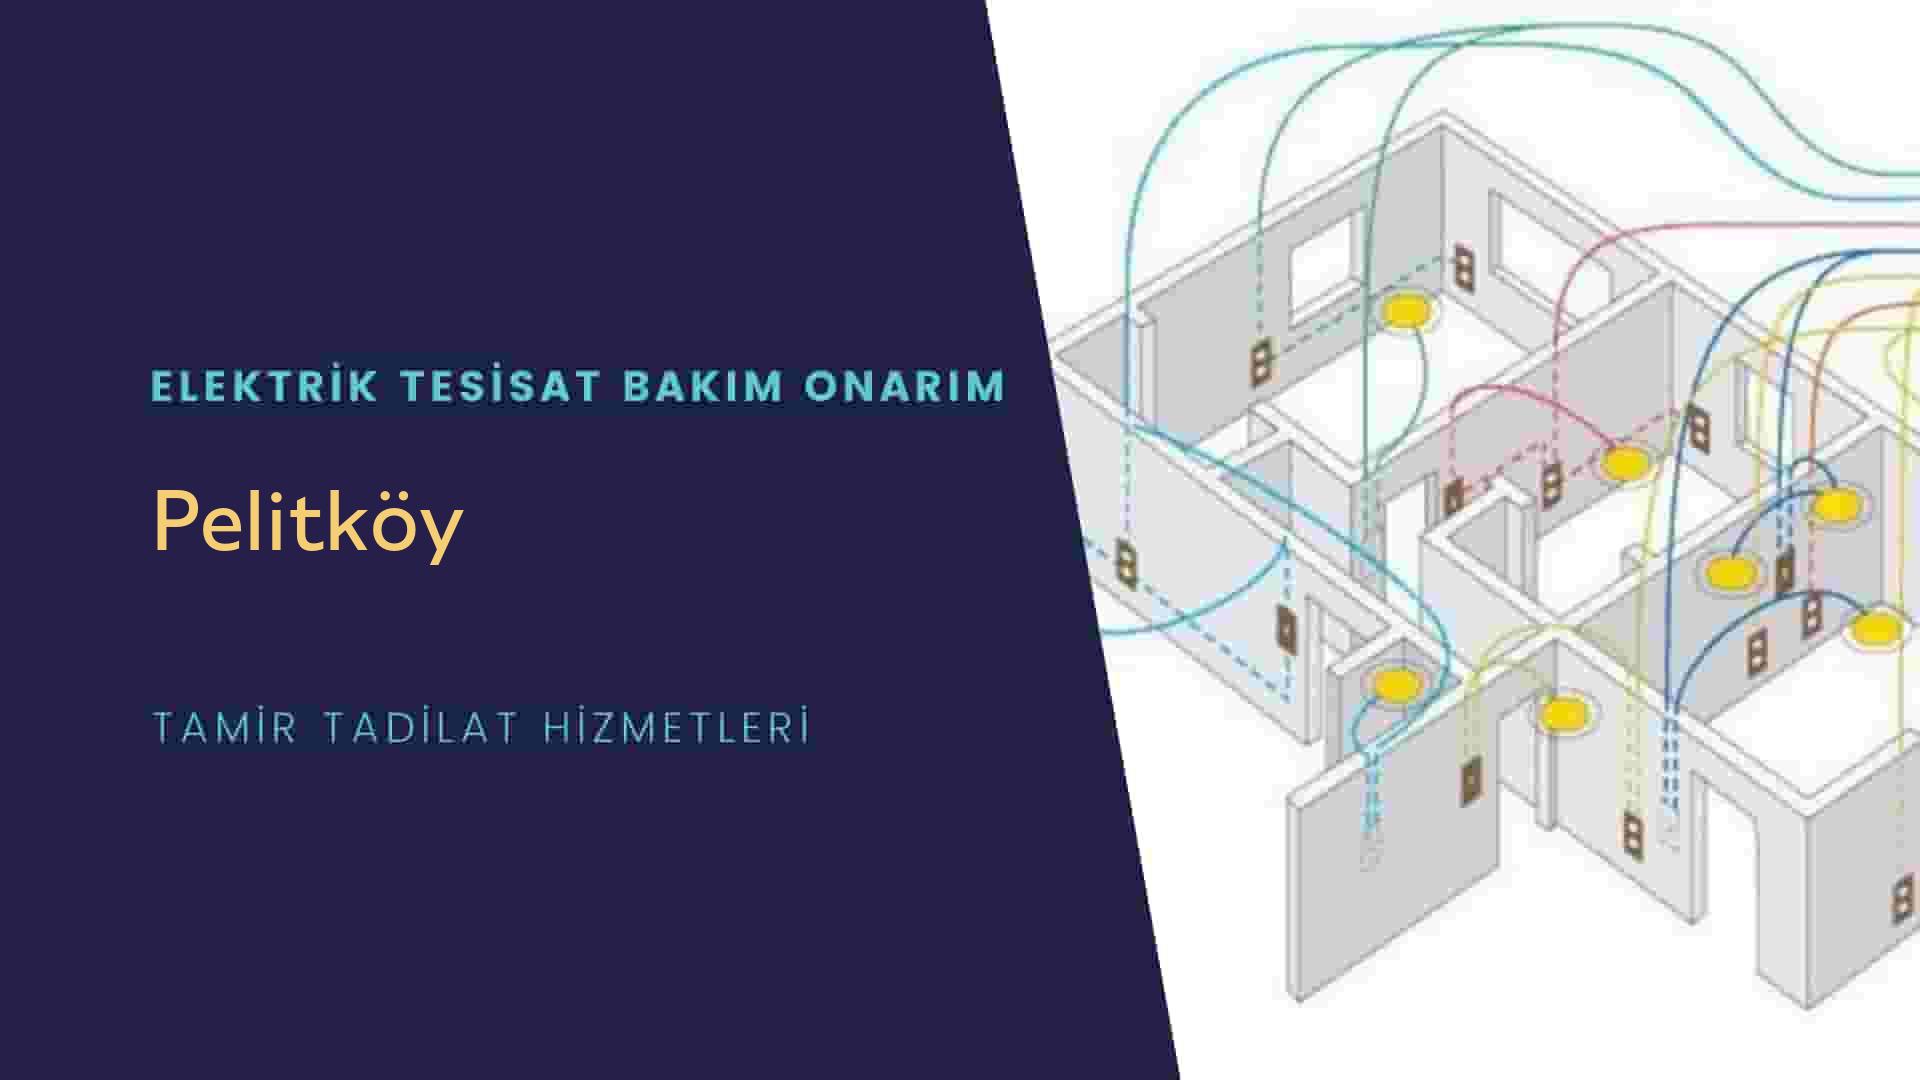 Pelitköy'de elektrik tesisatı ustalarımı arıyorsunuz doğru adrestenizi Pelitköy elektrik tesisatı ustalarımız 7/24 sizlere hizmet vermekten mutluluk duyar.